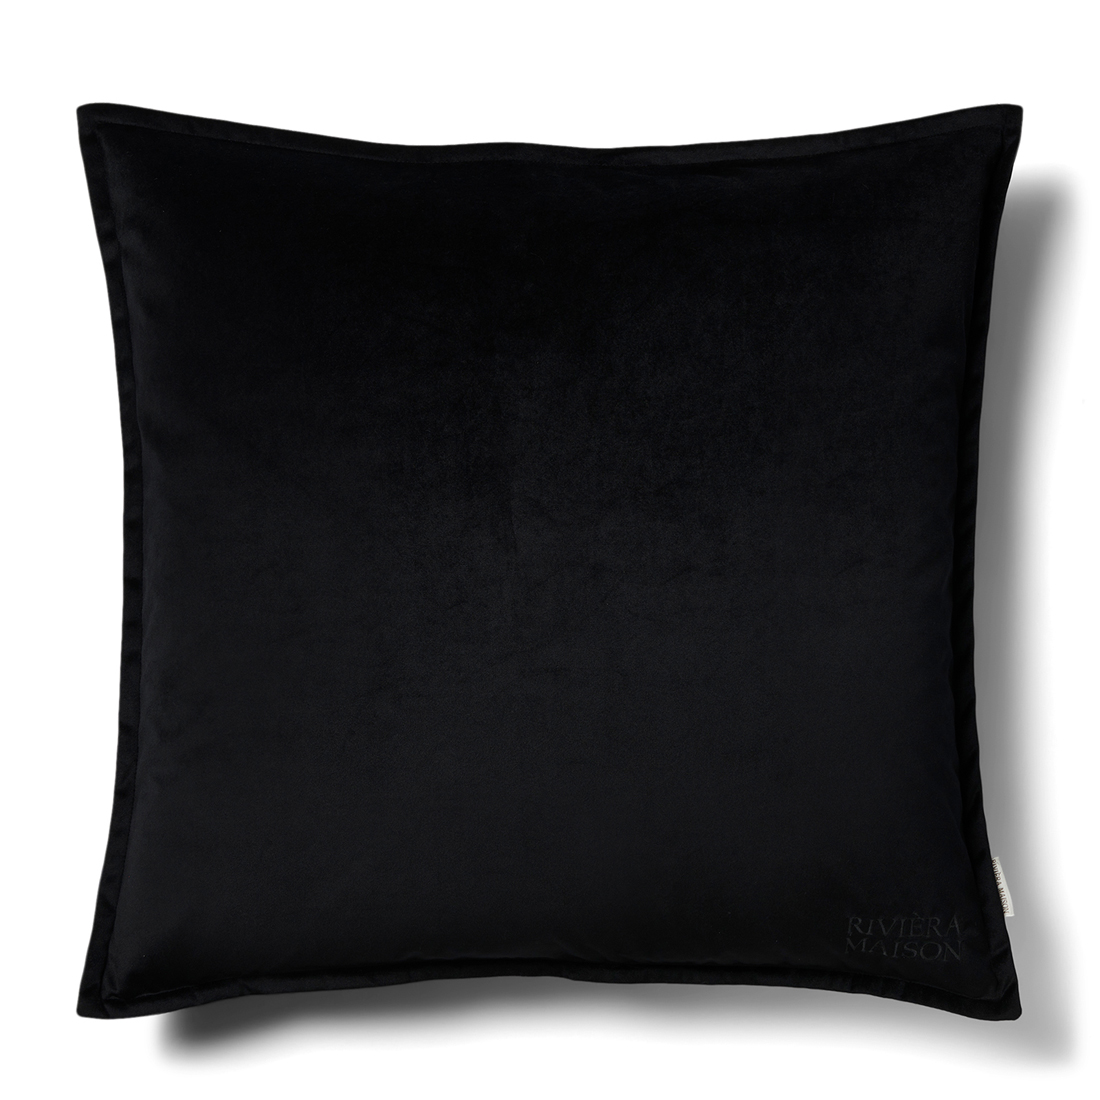 RM Velvet Pillow Cover black 60x60